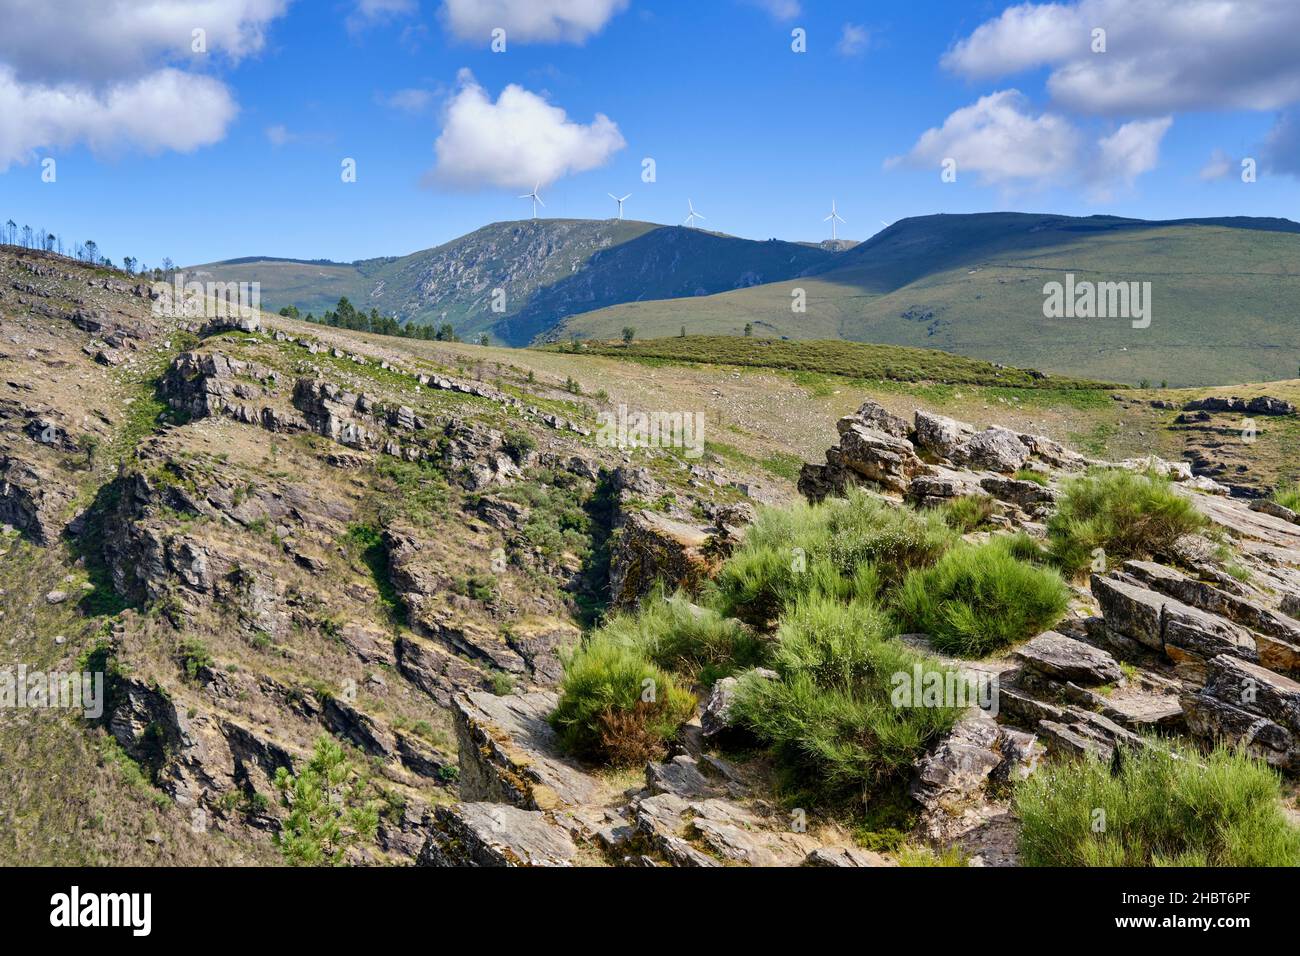 Parco naturale alvao immagini e fotografie stock ad alta risoluzione - Alamy